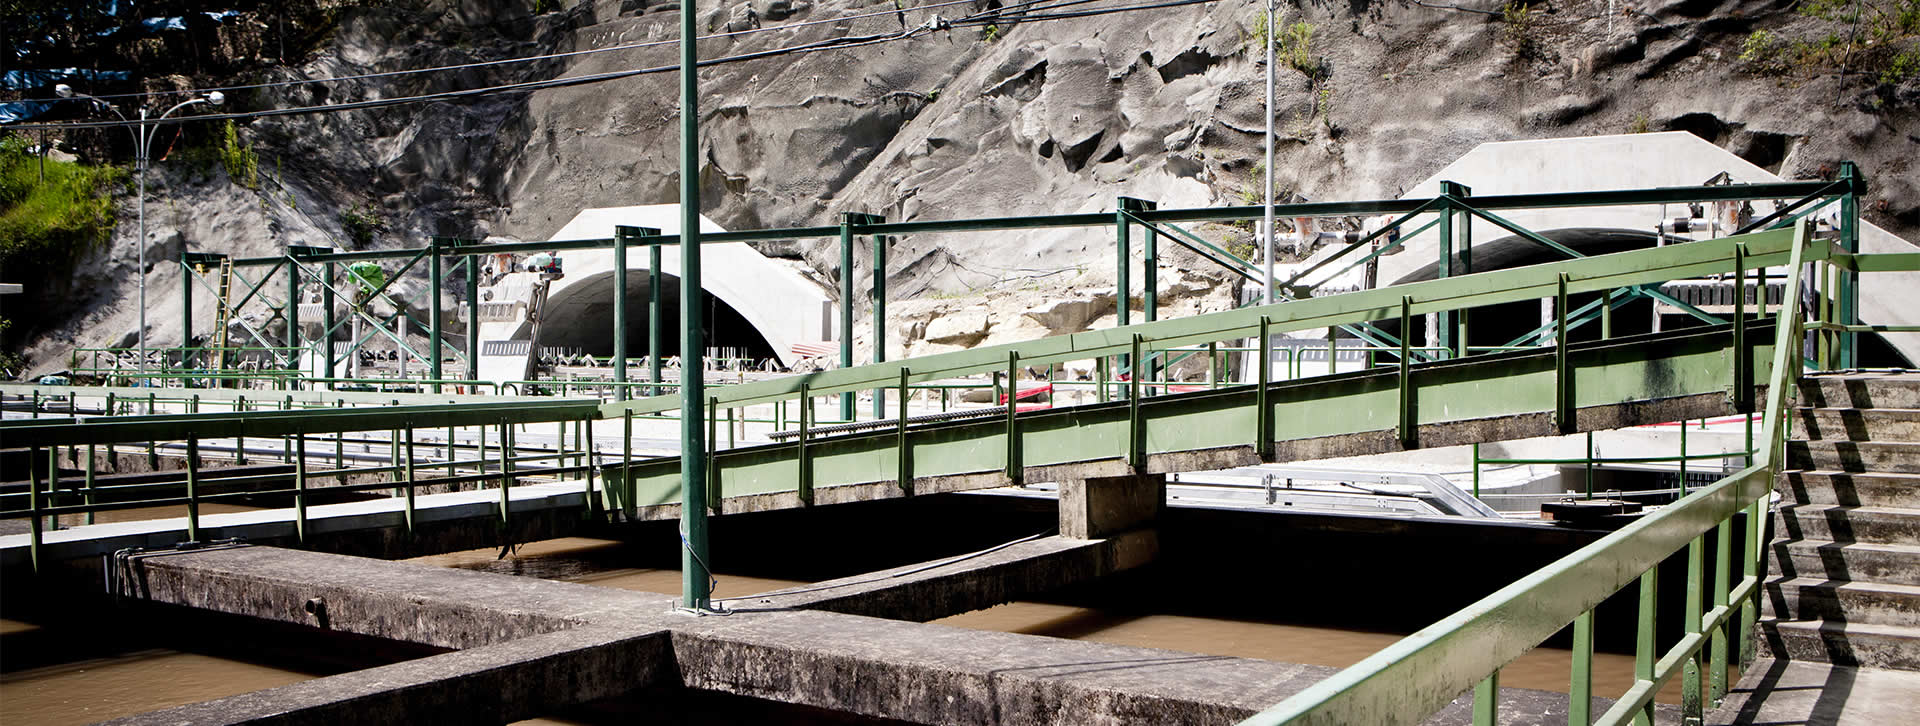 CUMBRA: Central Hidroeléctrica Machupicchu